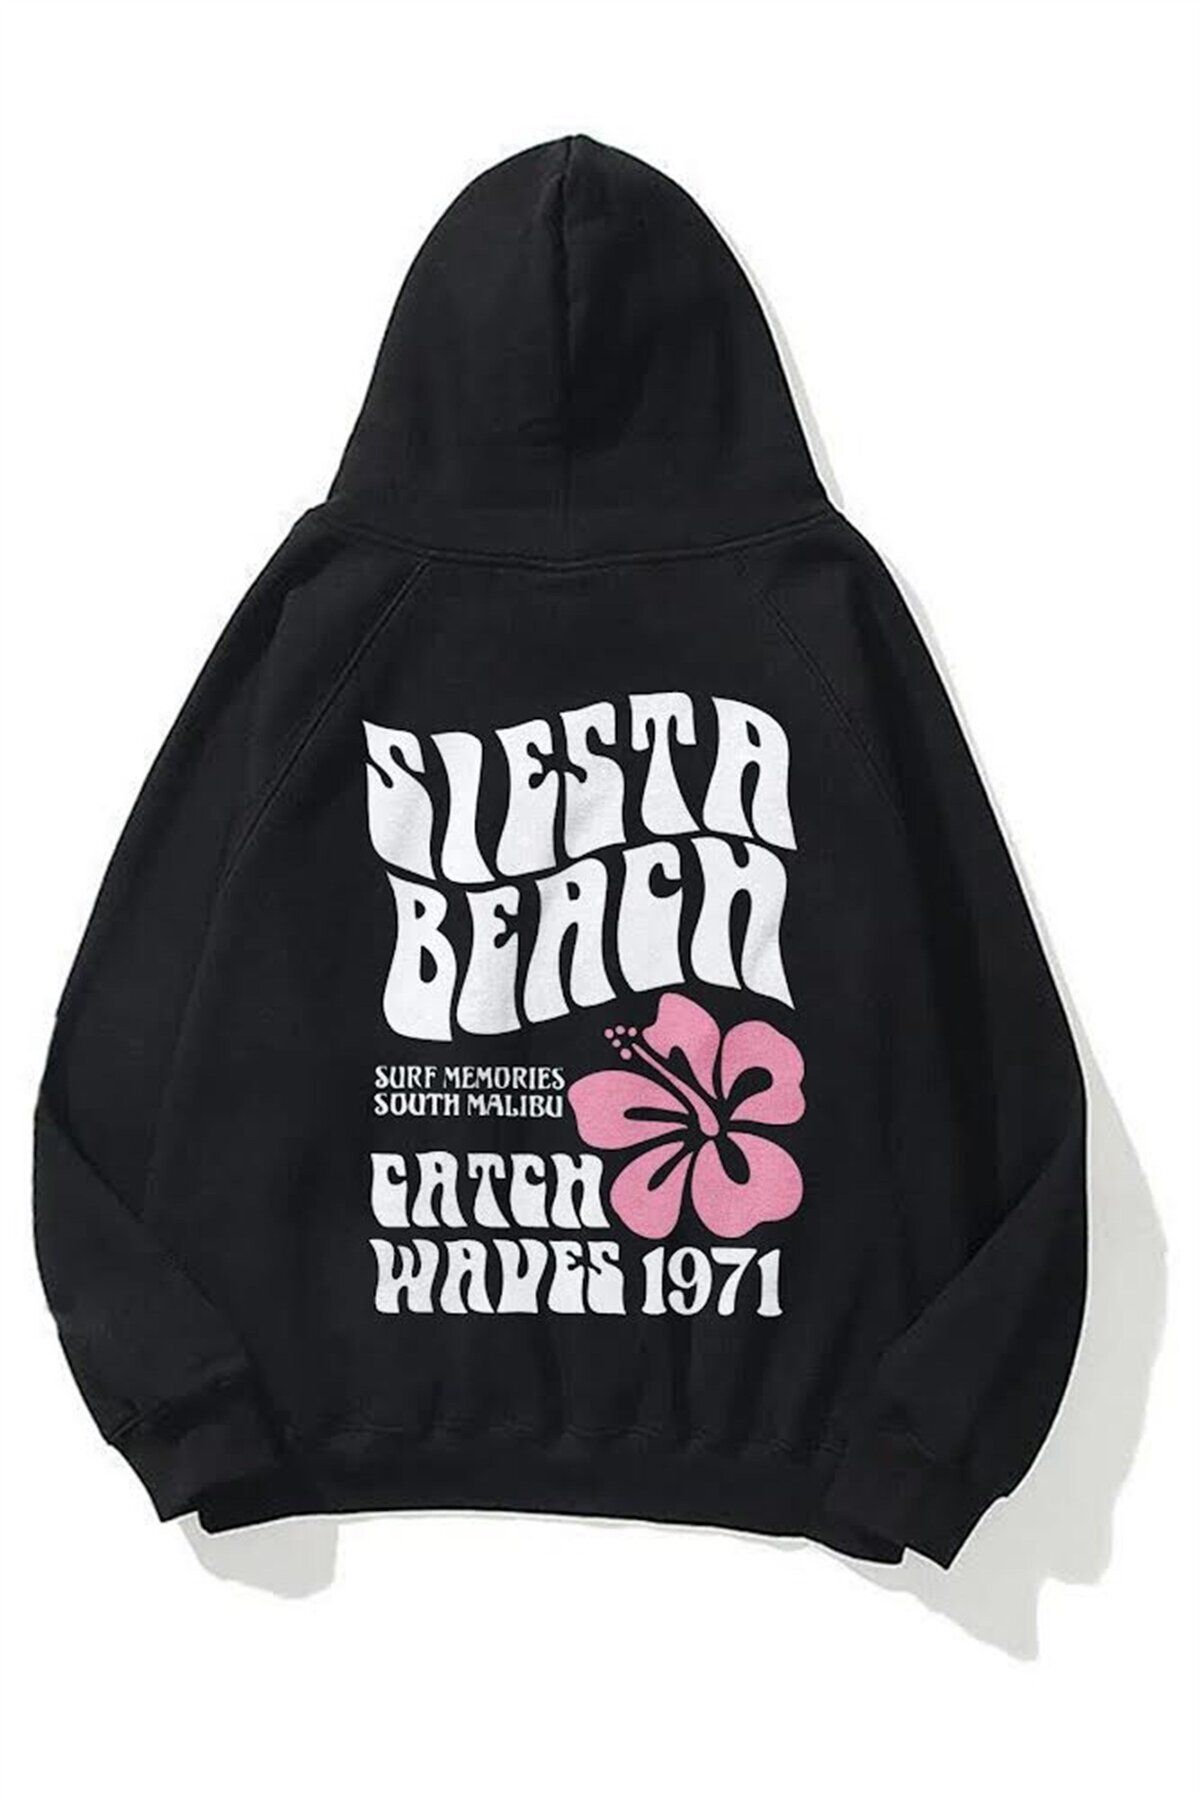 Trendiz Unisex Siesta Beach Sweatshirt Hoodie